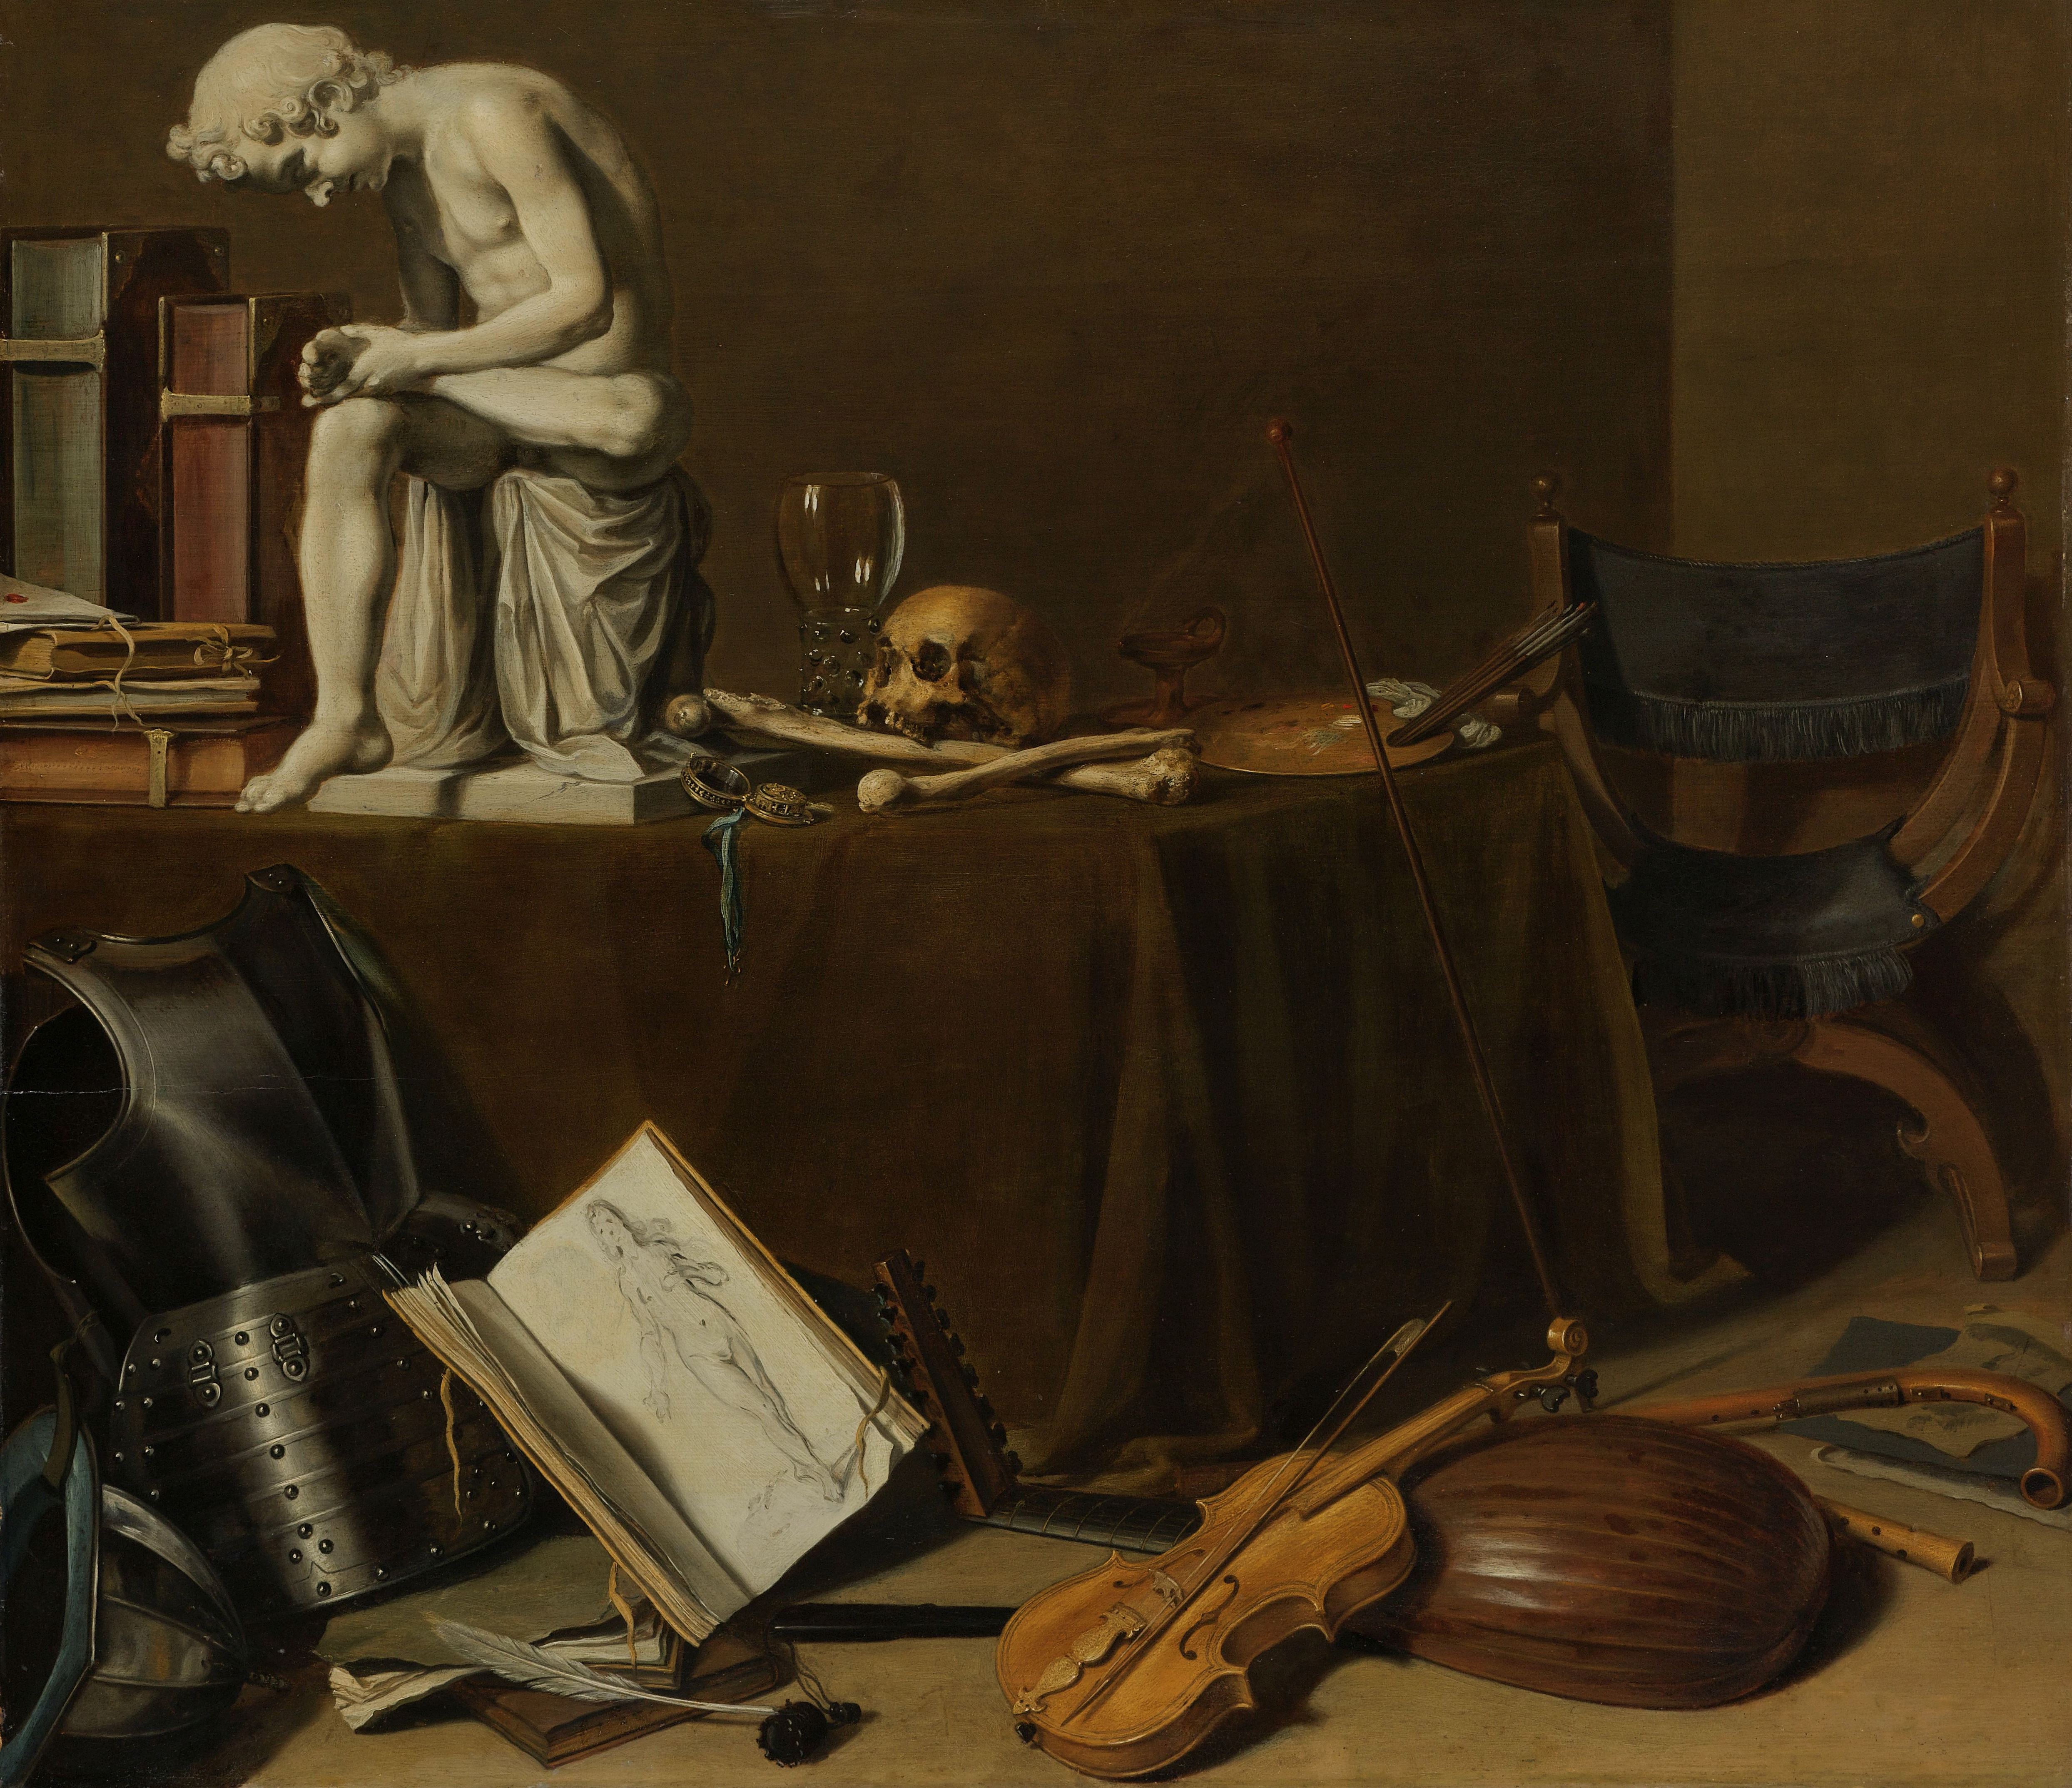 Tableau de Pieter Claesz, Vanité au tireur d'épine : vanité du savoir (les livres), du pouvoir (l'armure), des plaisirs (le vin, la musique, l'art)